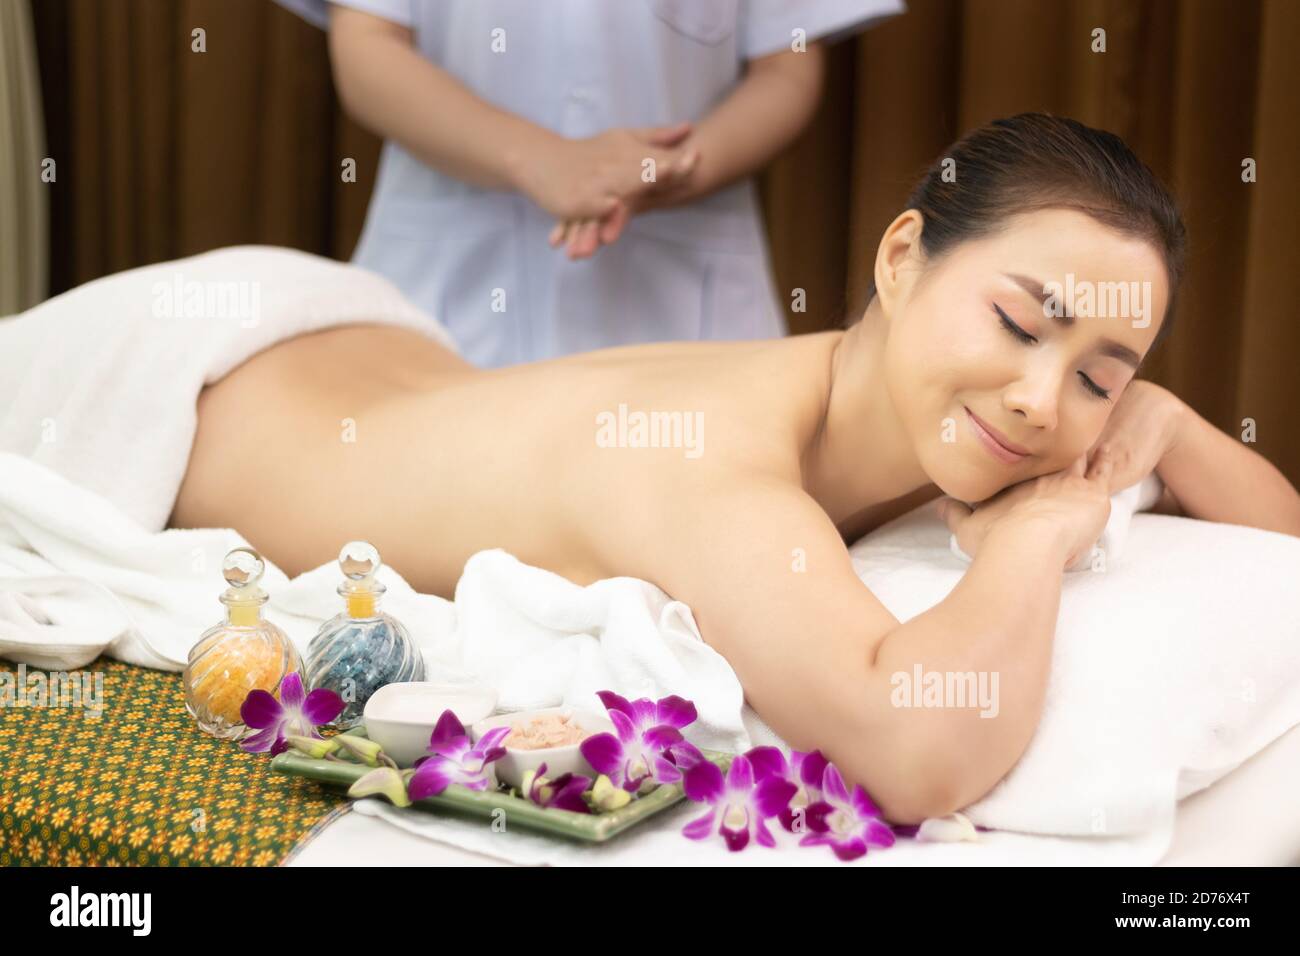 Hermosa joven relajarse mujer asiática tumbada en la cama de masaje con cuerpo desnudo, masseur preparar masaje de aceite en la parte trasera en el tratamiento de belleza spa salón Foto de stock